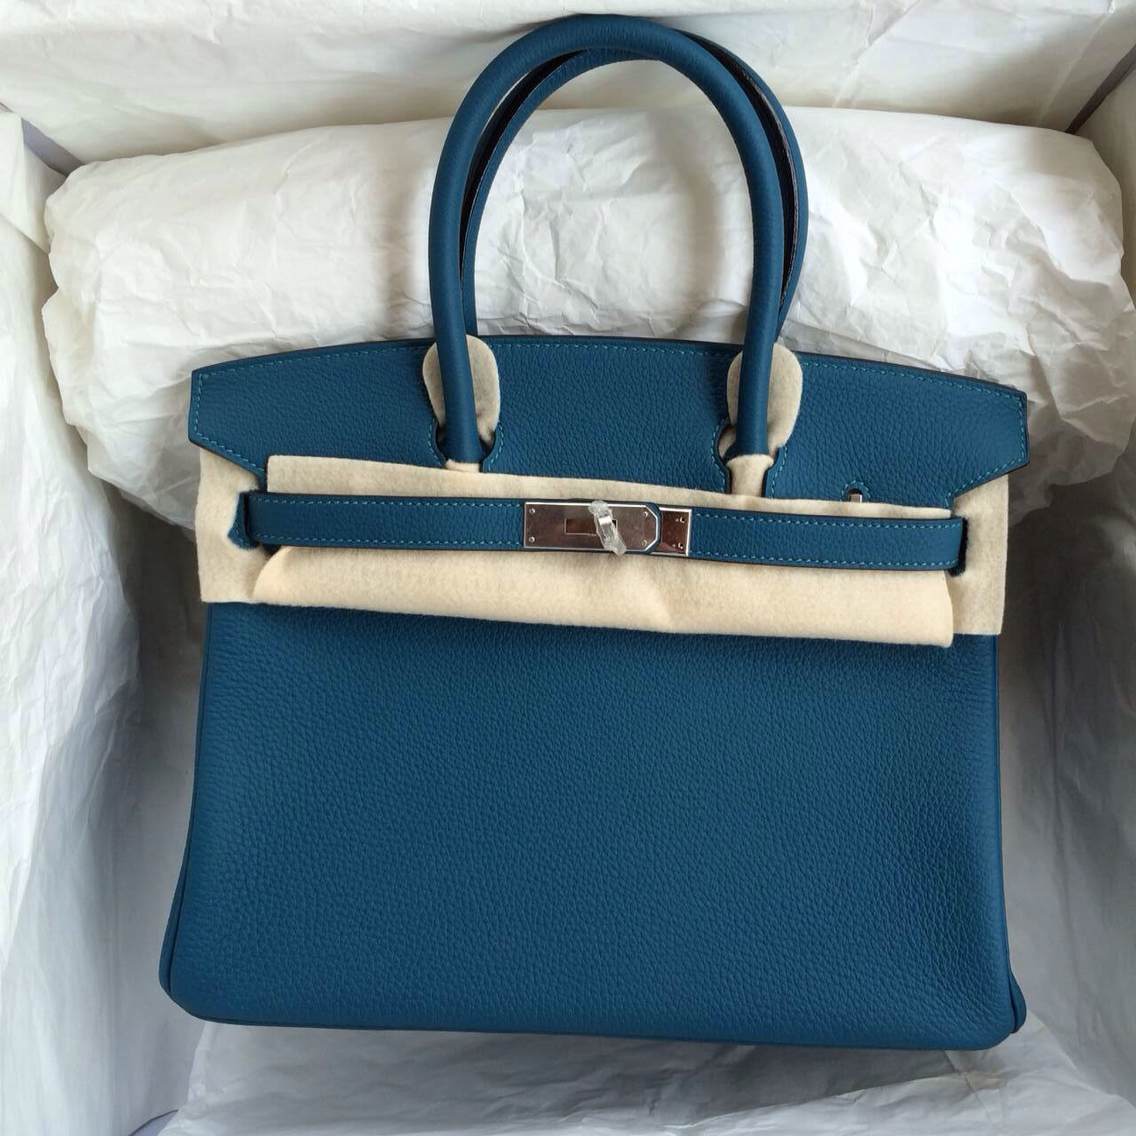 Hermes Birkin Bag 30cm S7 Blue De Galice France Togo Leather Silver Hardware — Hermes Crocodile ...